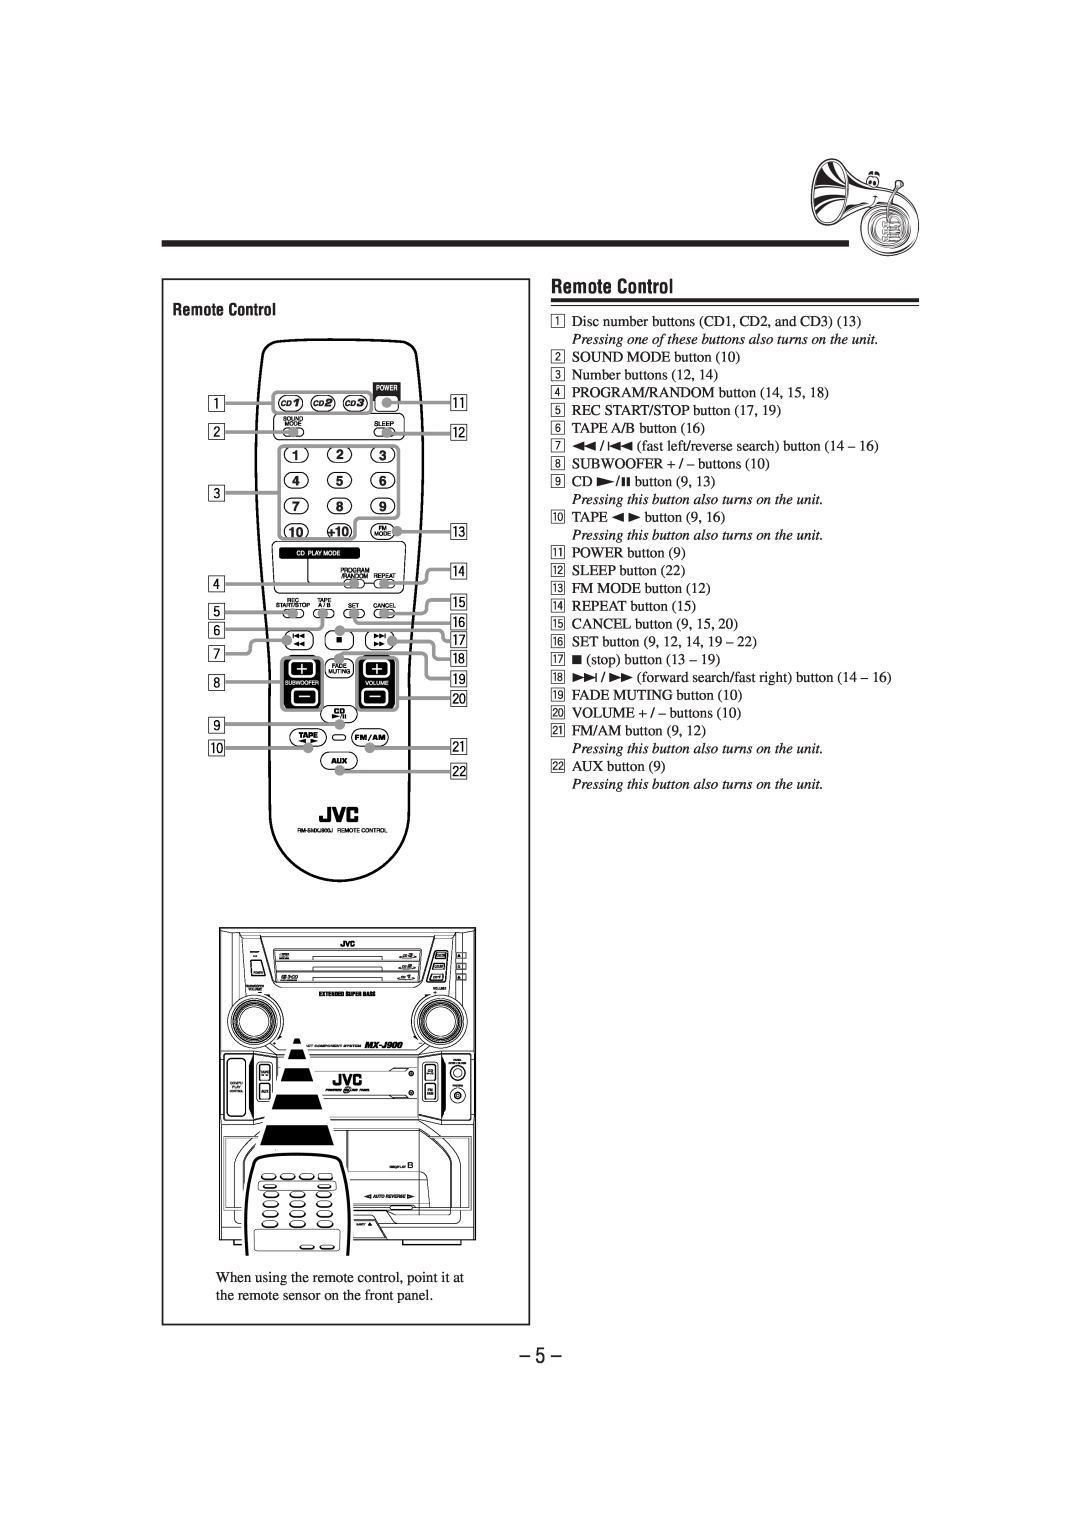 JVC MX-J900 manual Remote Control 